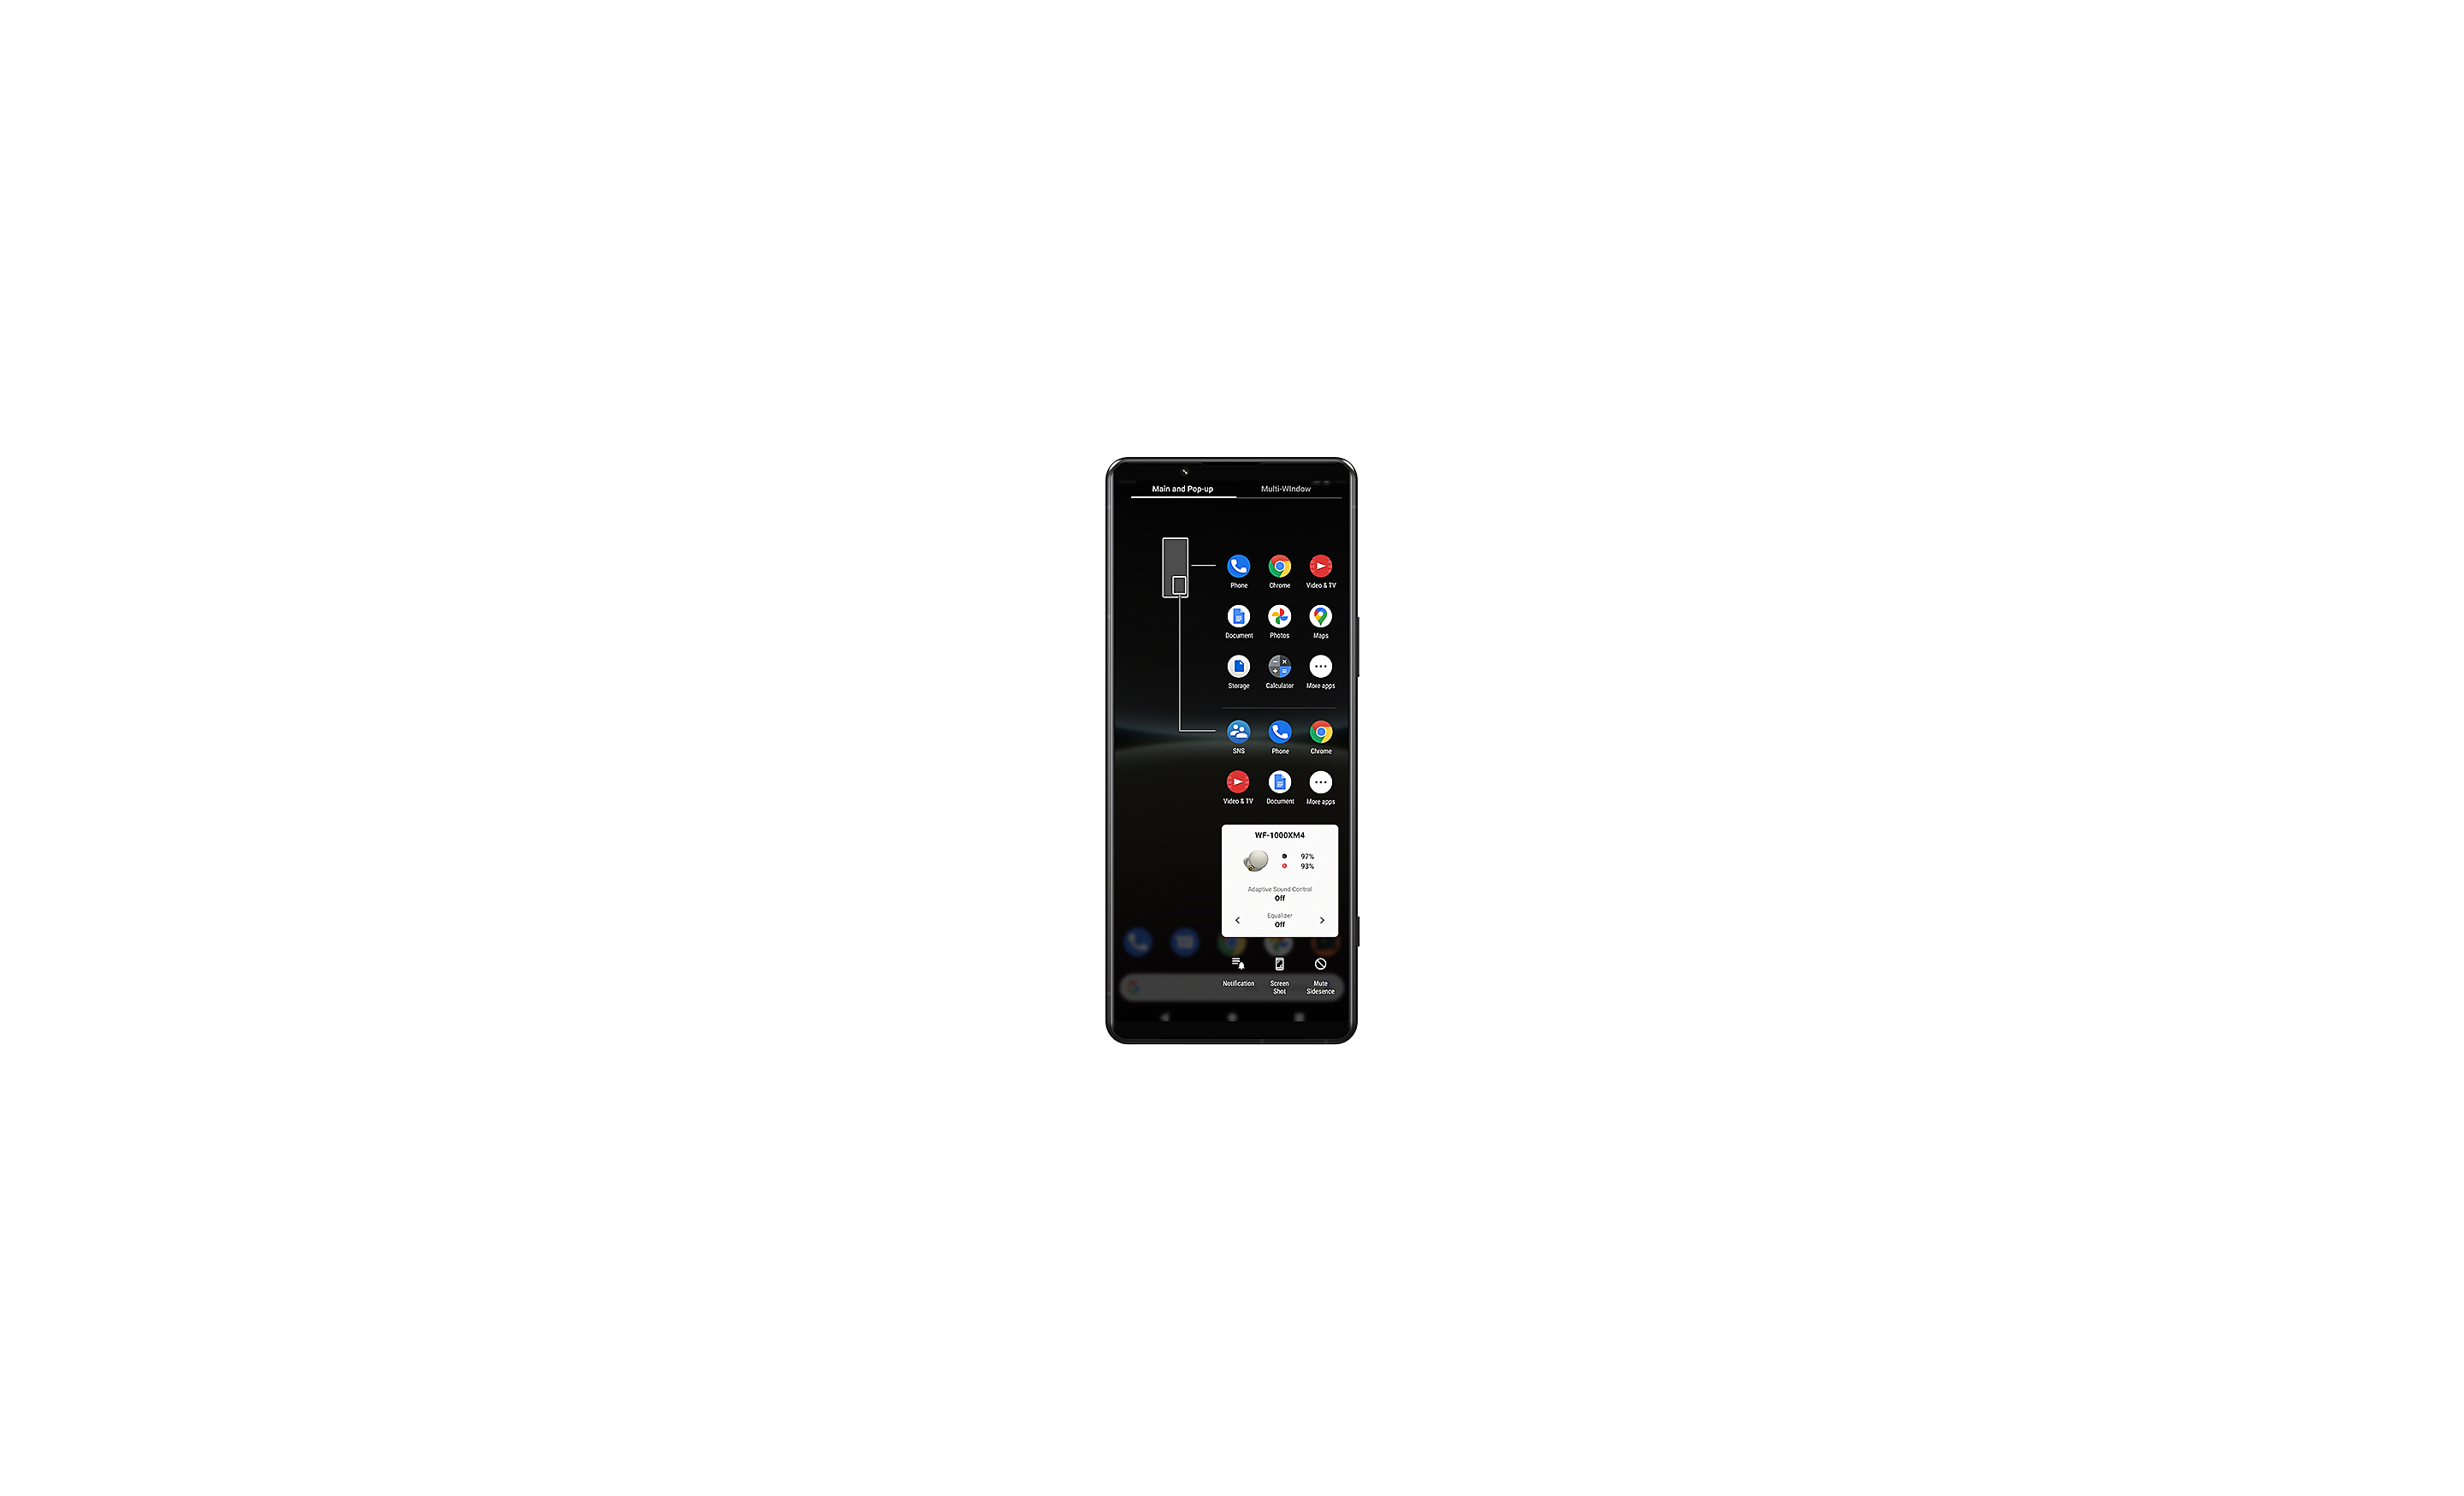 Xperia-smartphone met de UI van vensterbeheer